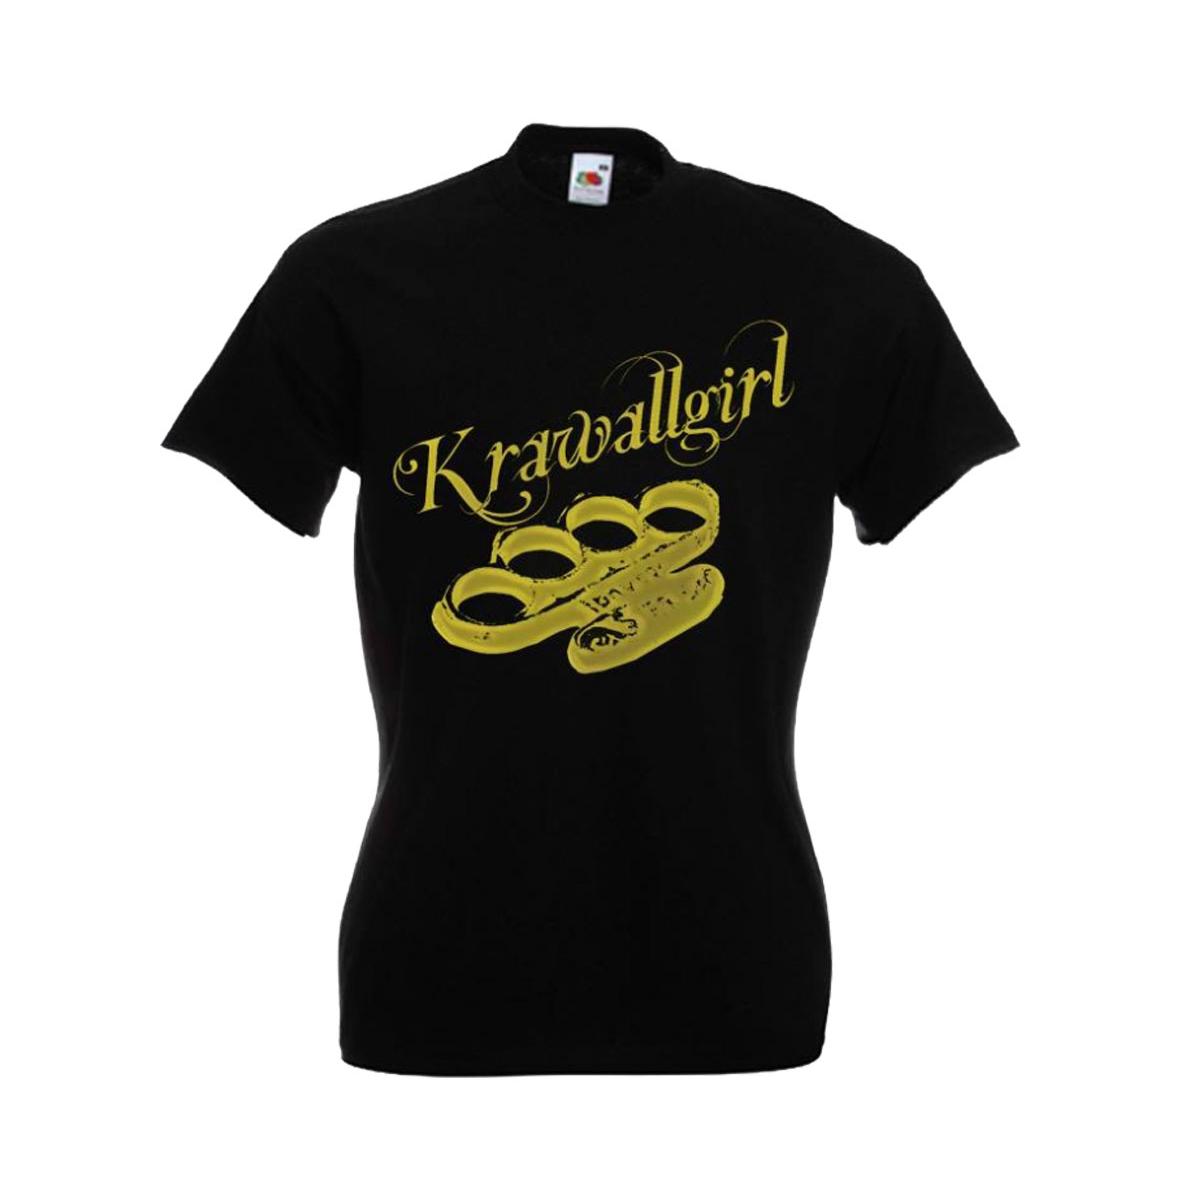 Krawallgirl - Schlagring - Frauen T-Shirt - schwarz-gold